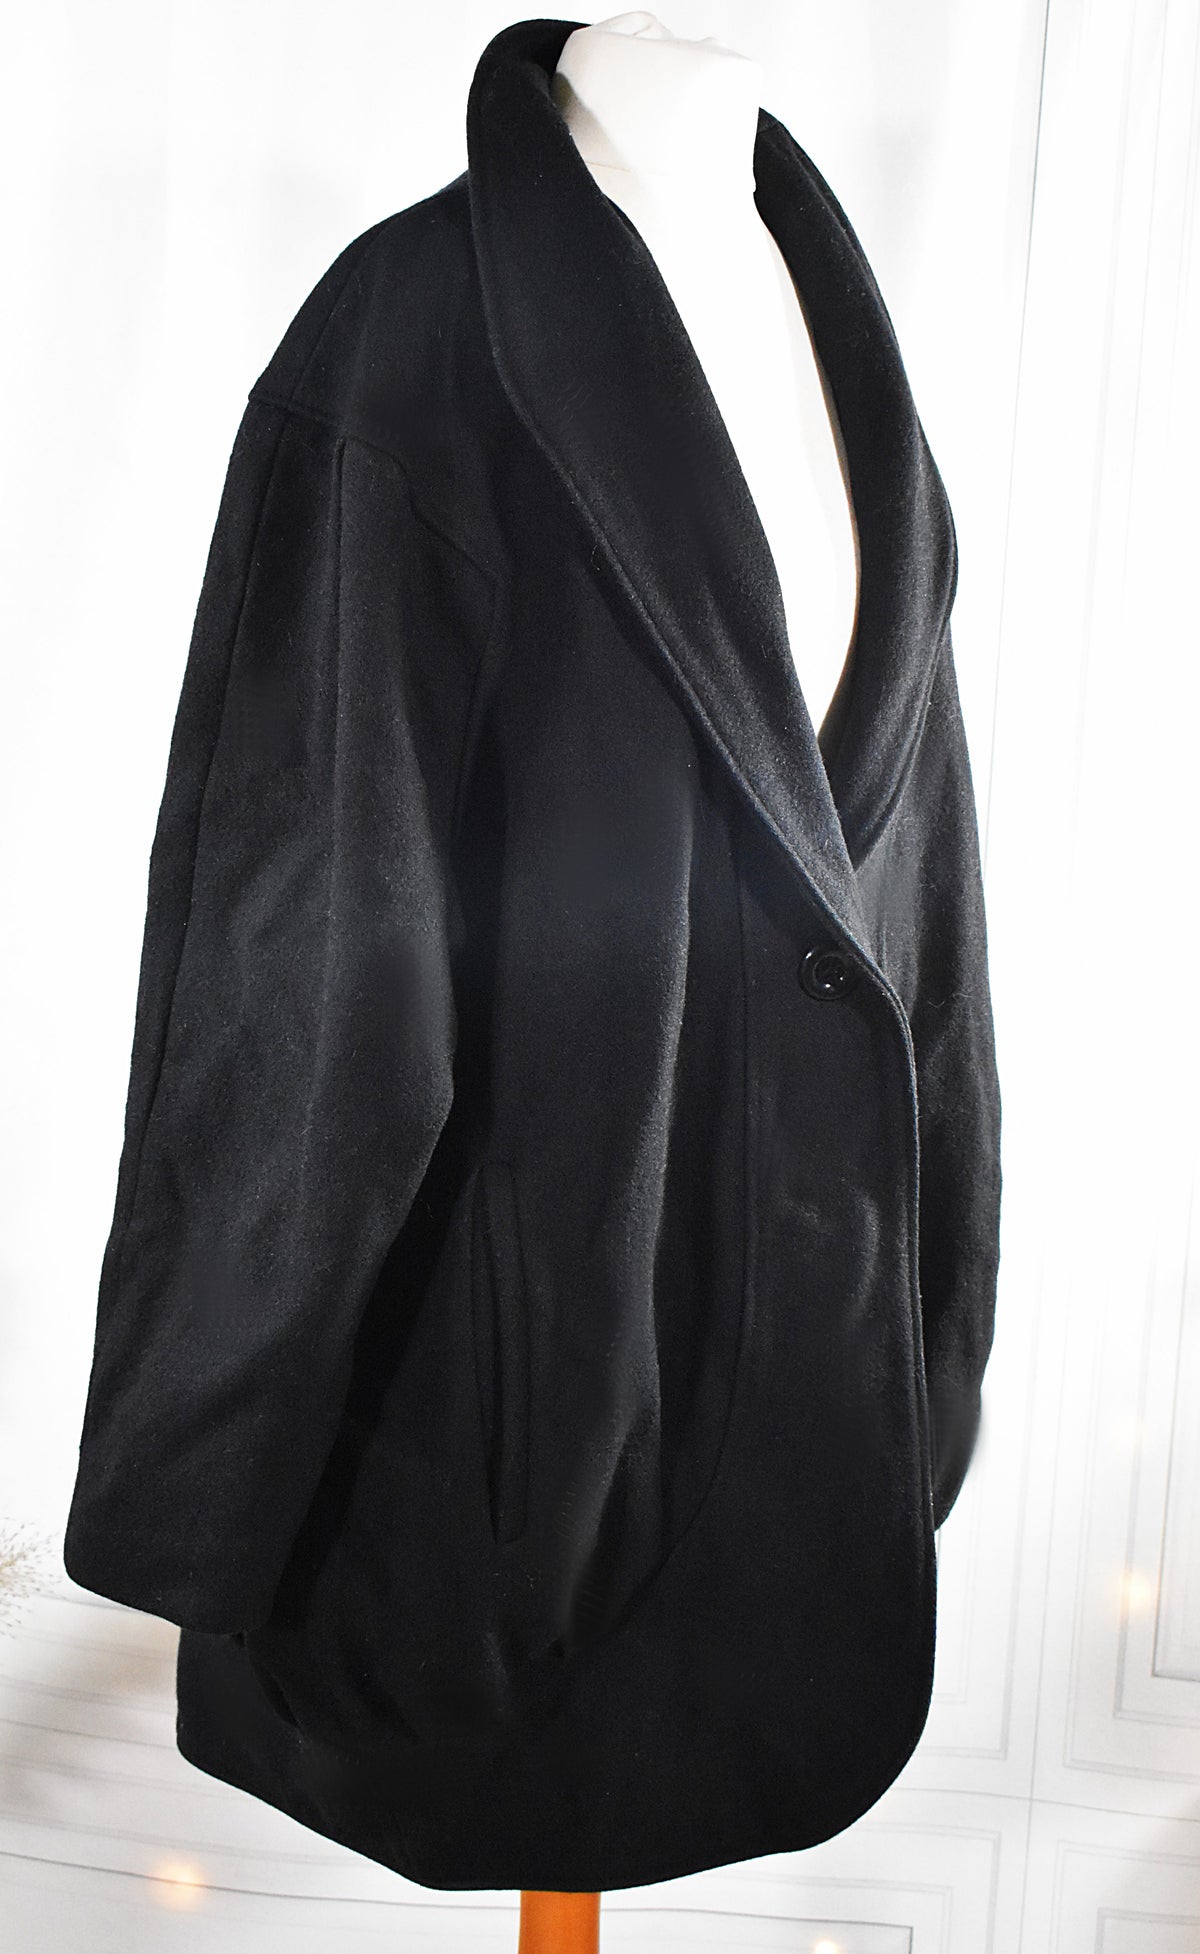 Manteau court en laine mélangée noir